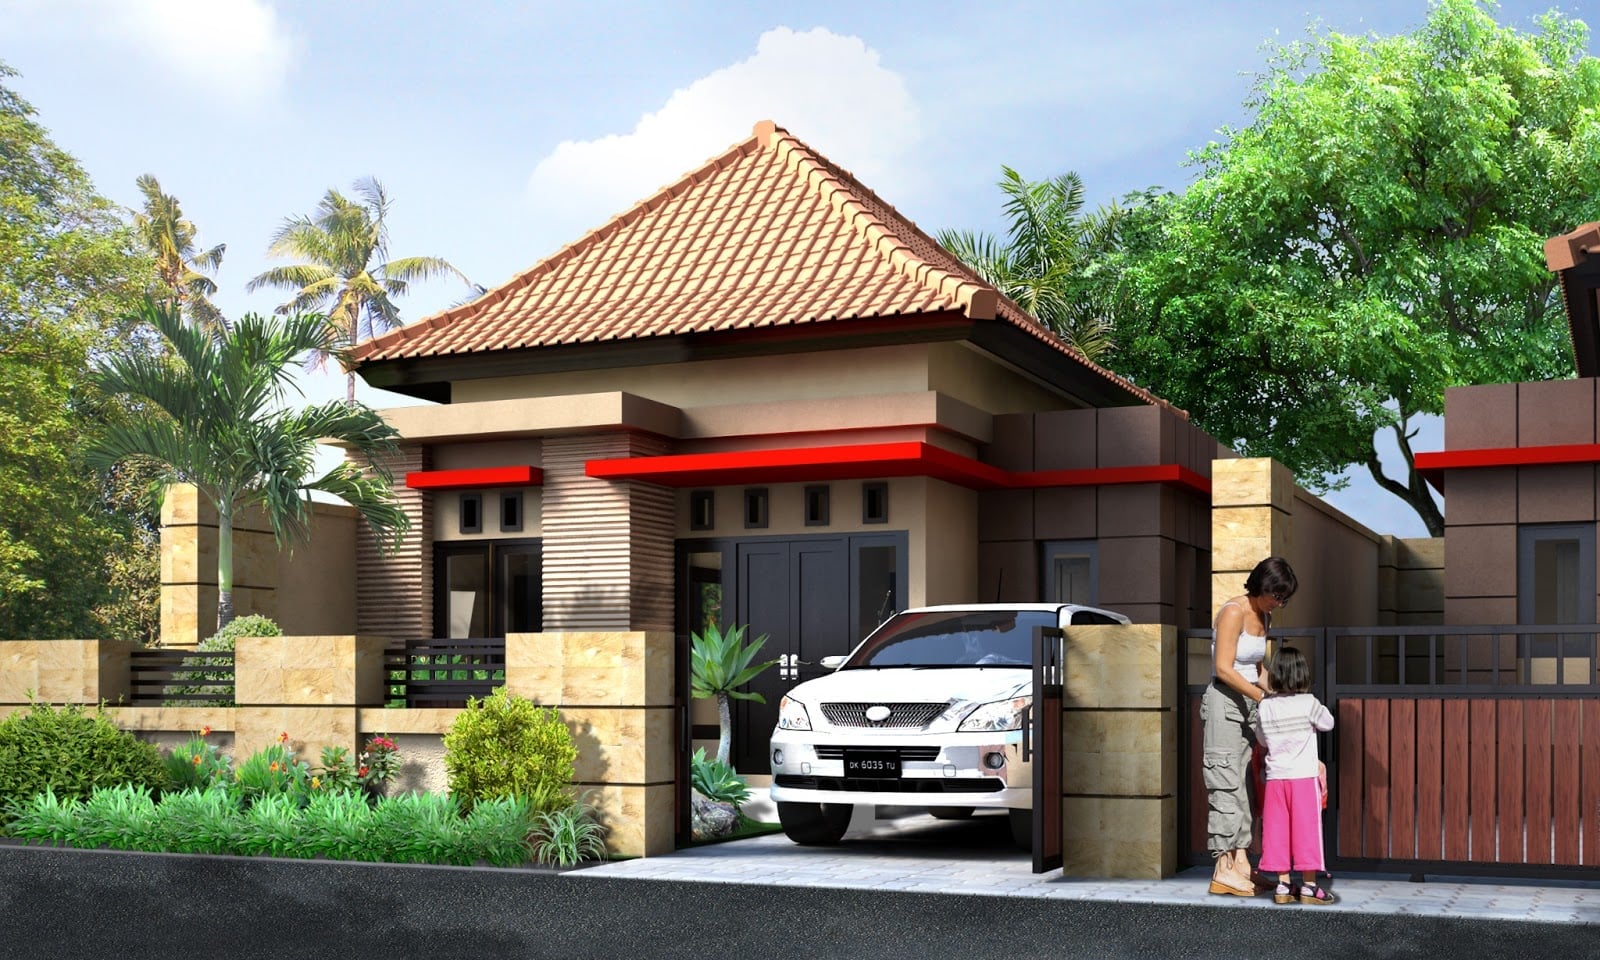 Unik Desain Rumah Sederhana Gaya Bali 71 Di Ide Merancang Interior Rumah untuk Desain Rumah Sederhana Gaya Bali